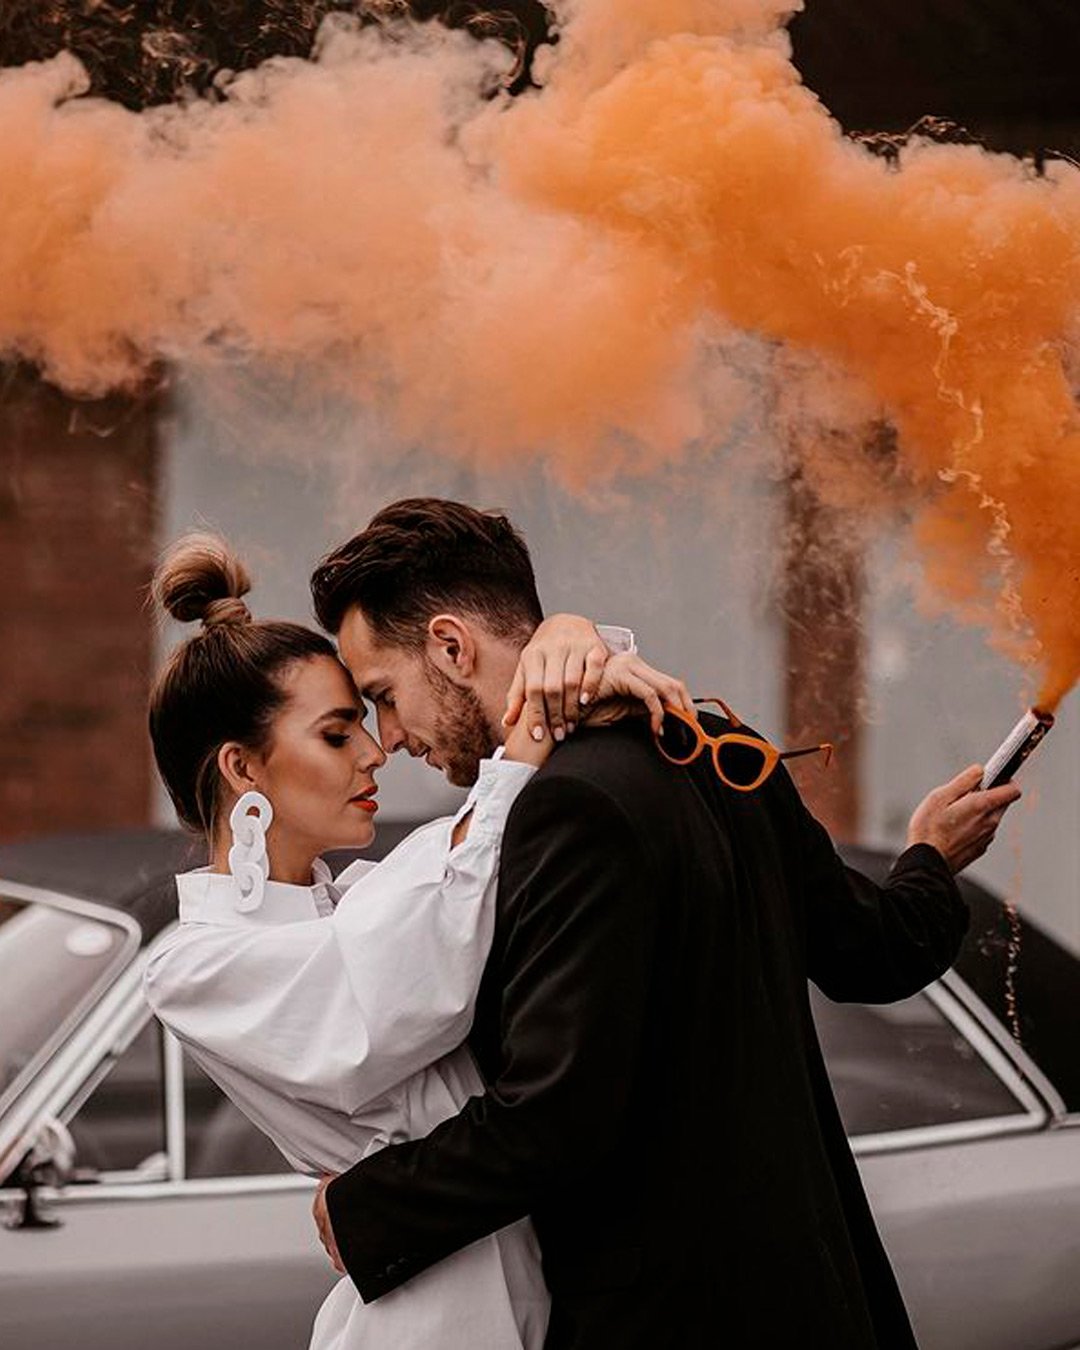 fall wedding color smoke bomb